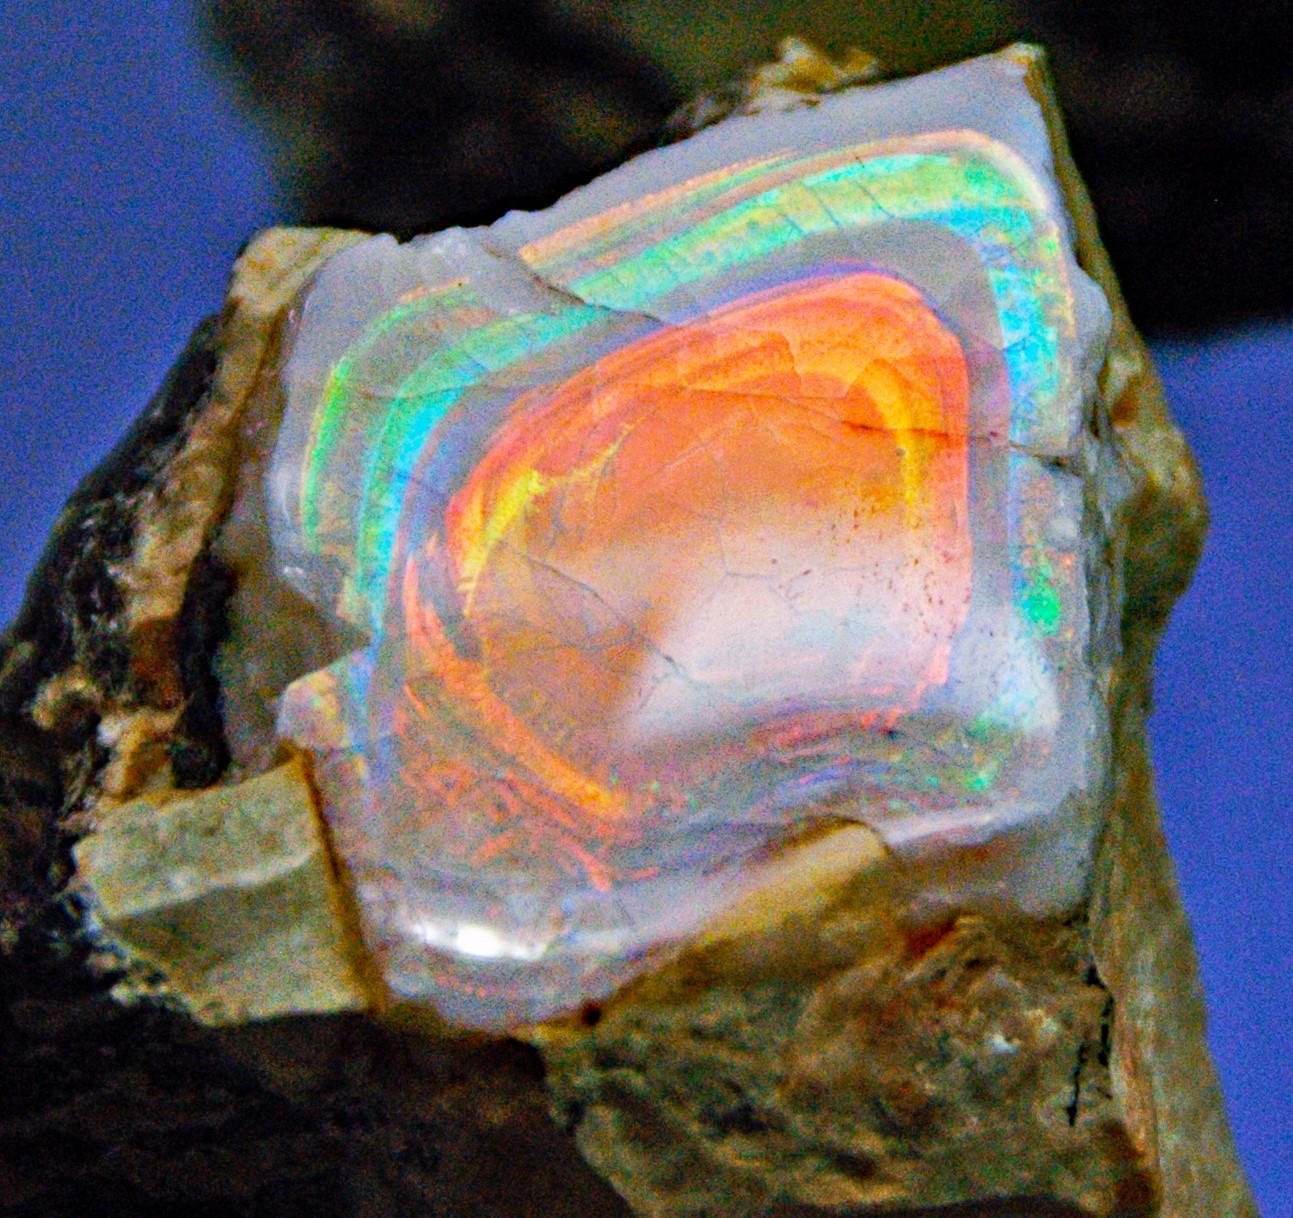 A precious opal